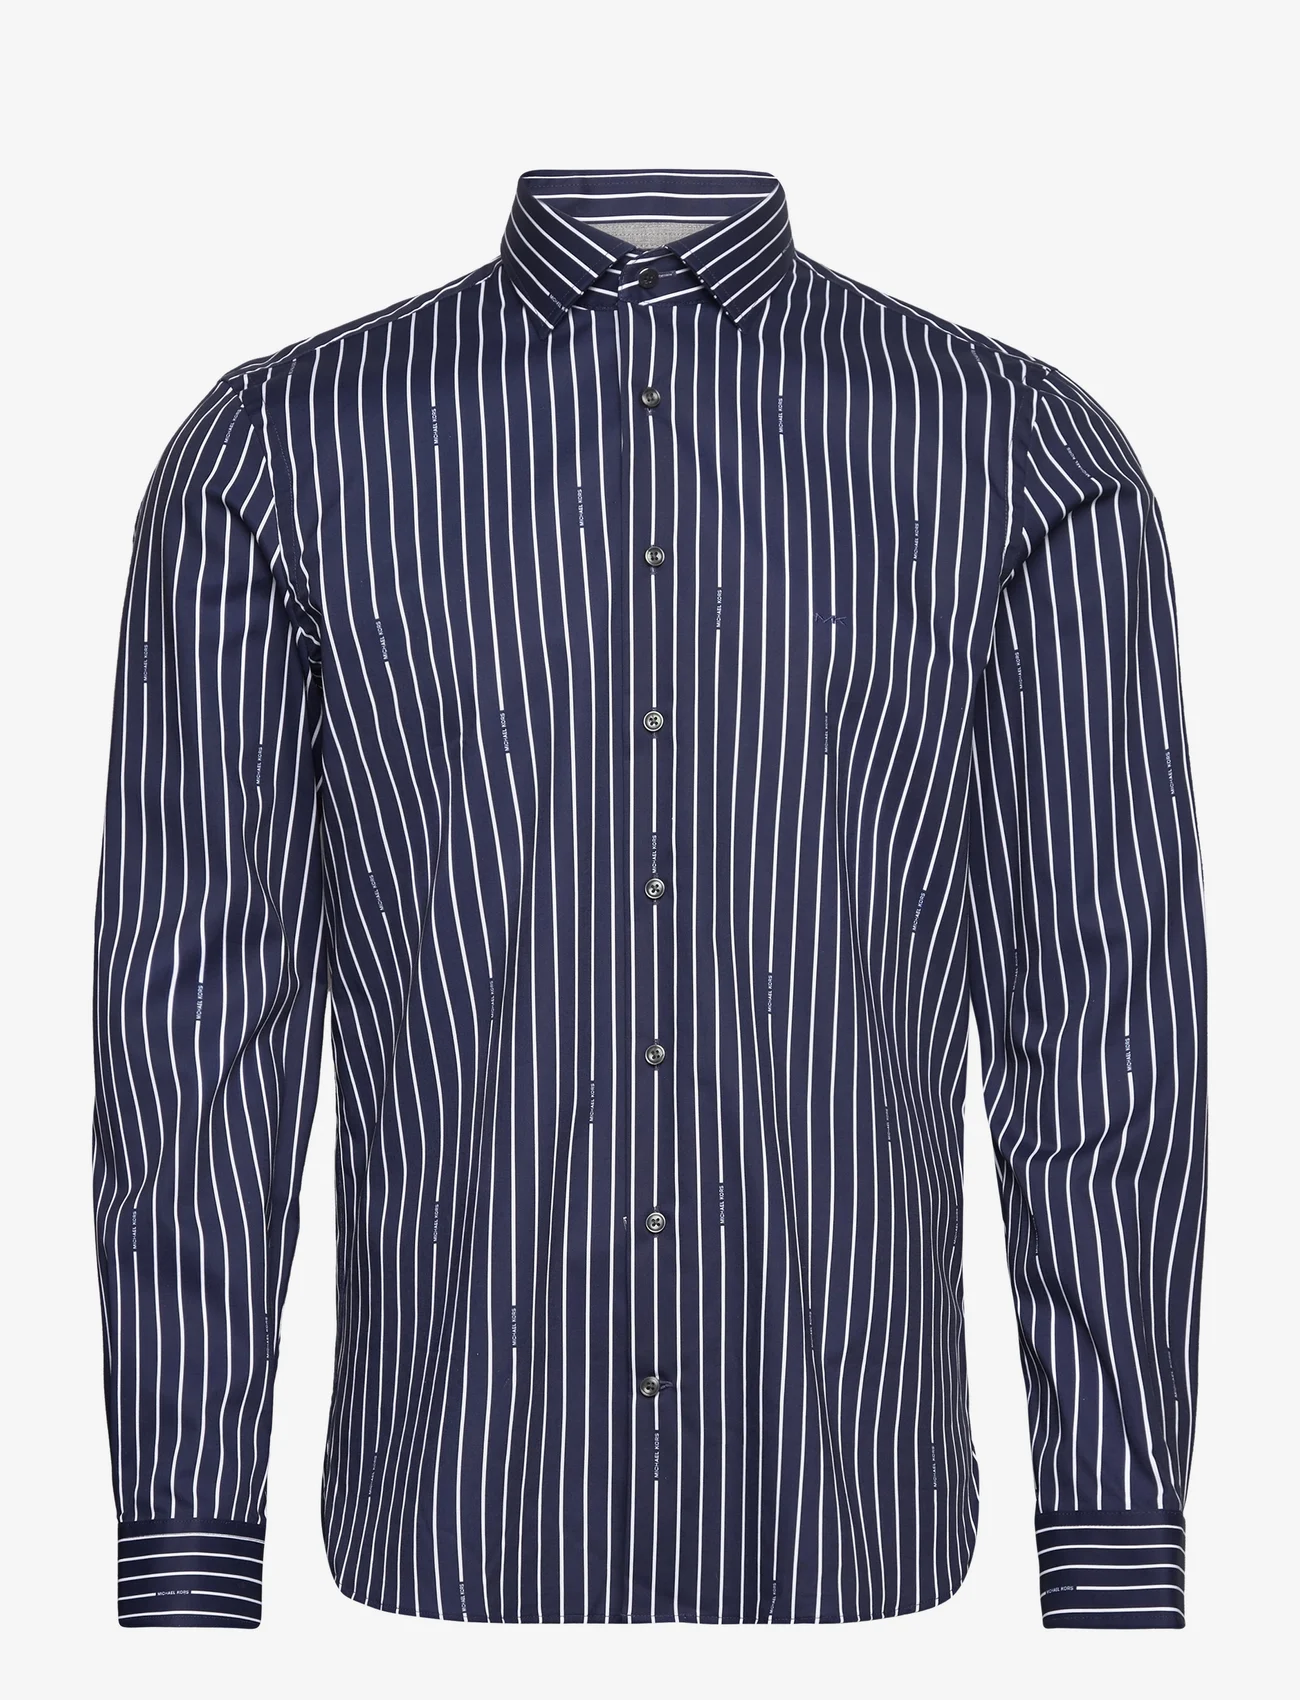 Michael Kors - MK PRINTED STRIPE MODERN SHIRT - business skjorter - navy - 0